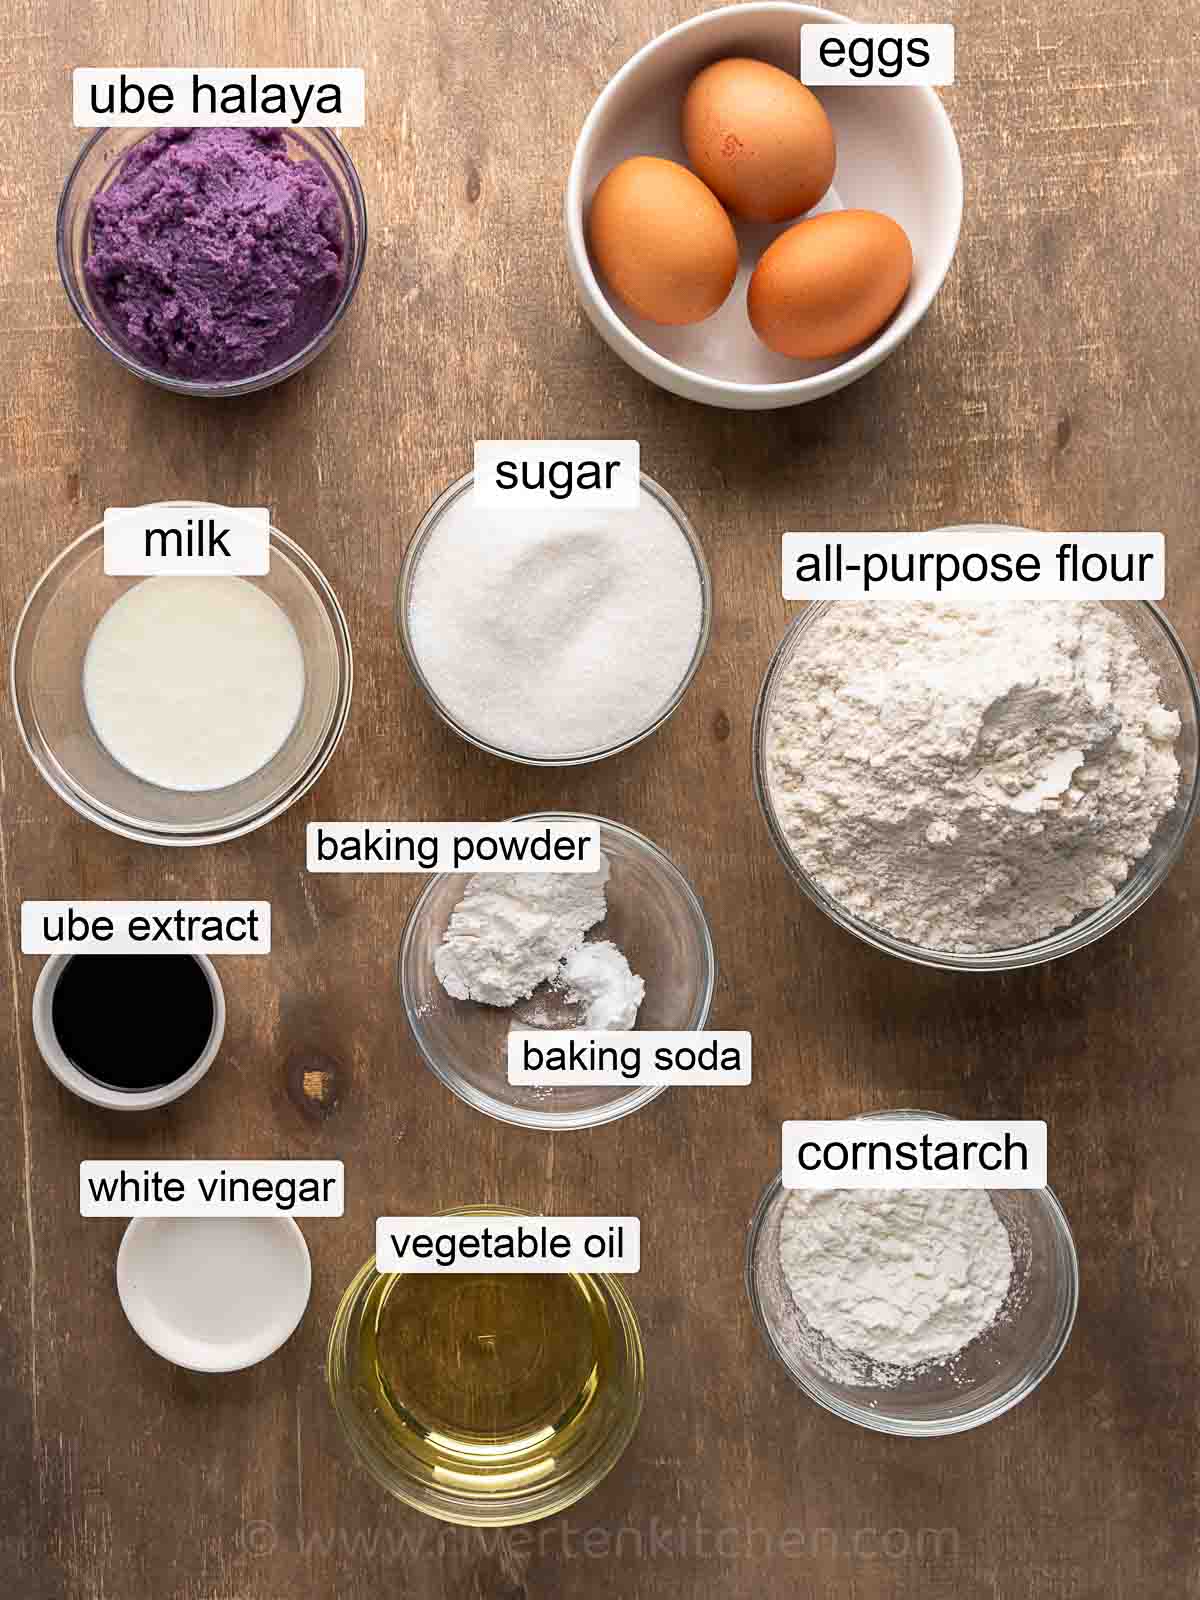 Ube jam, eggs, flour, oil, cornstarch, ube extract, vegetable oil, baking powder, milk, white vinegar, and sugar.